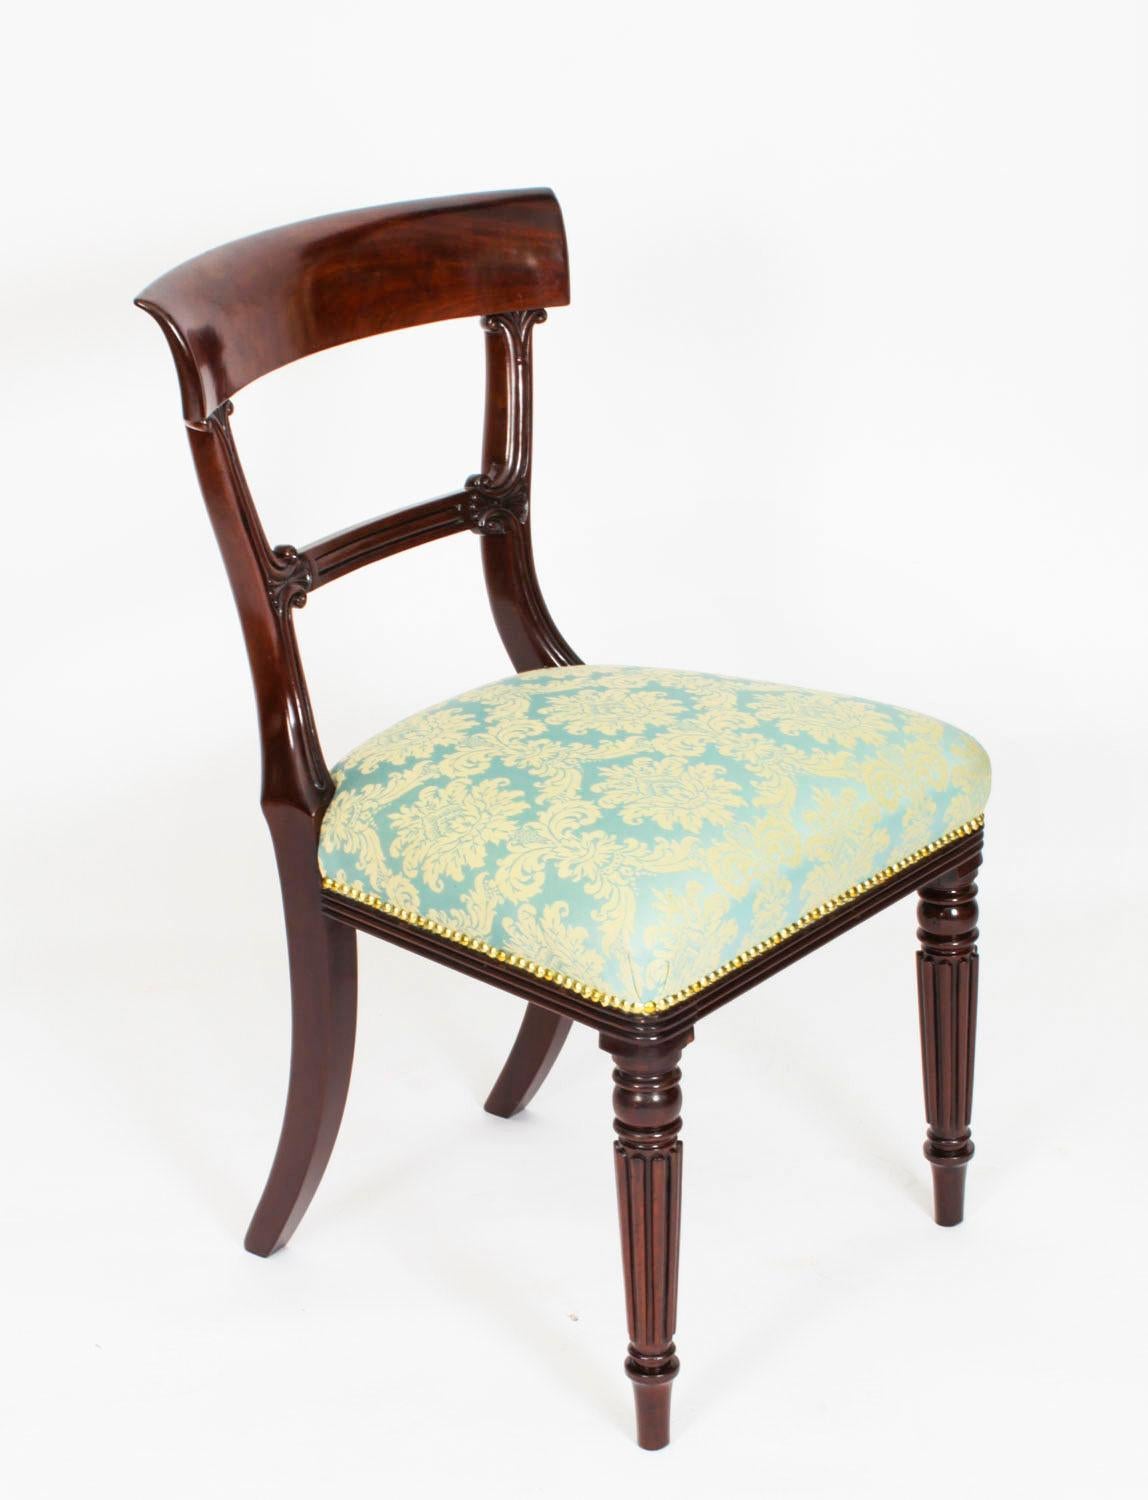 Il s'agit d'un fantastique ensemble anglais de huit pièces anciennes.  Chaises de salle à manger de style William IV, datant de 1830 environ.

L'ensemble comprend huit chaises d'appoint dont les sièges ont été retapissés dans un tissu azur